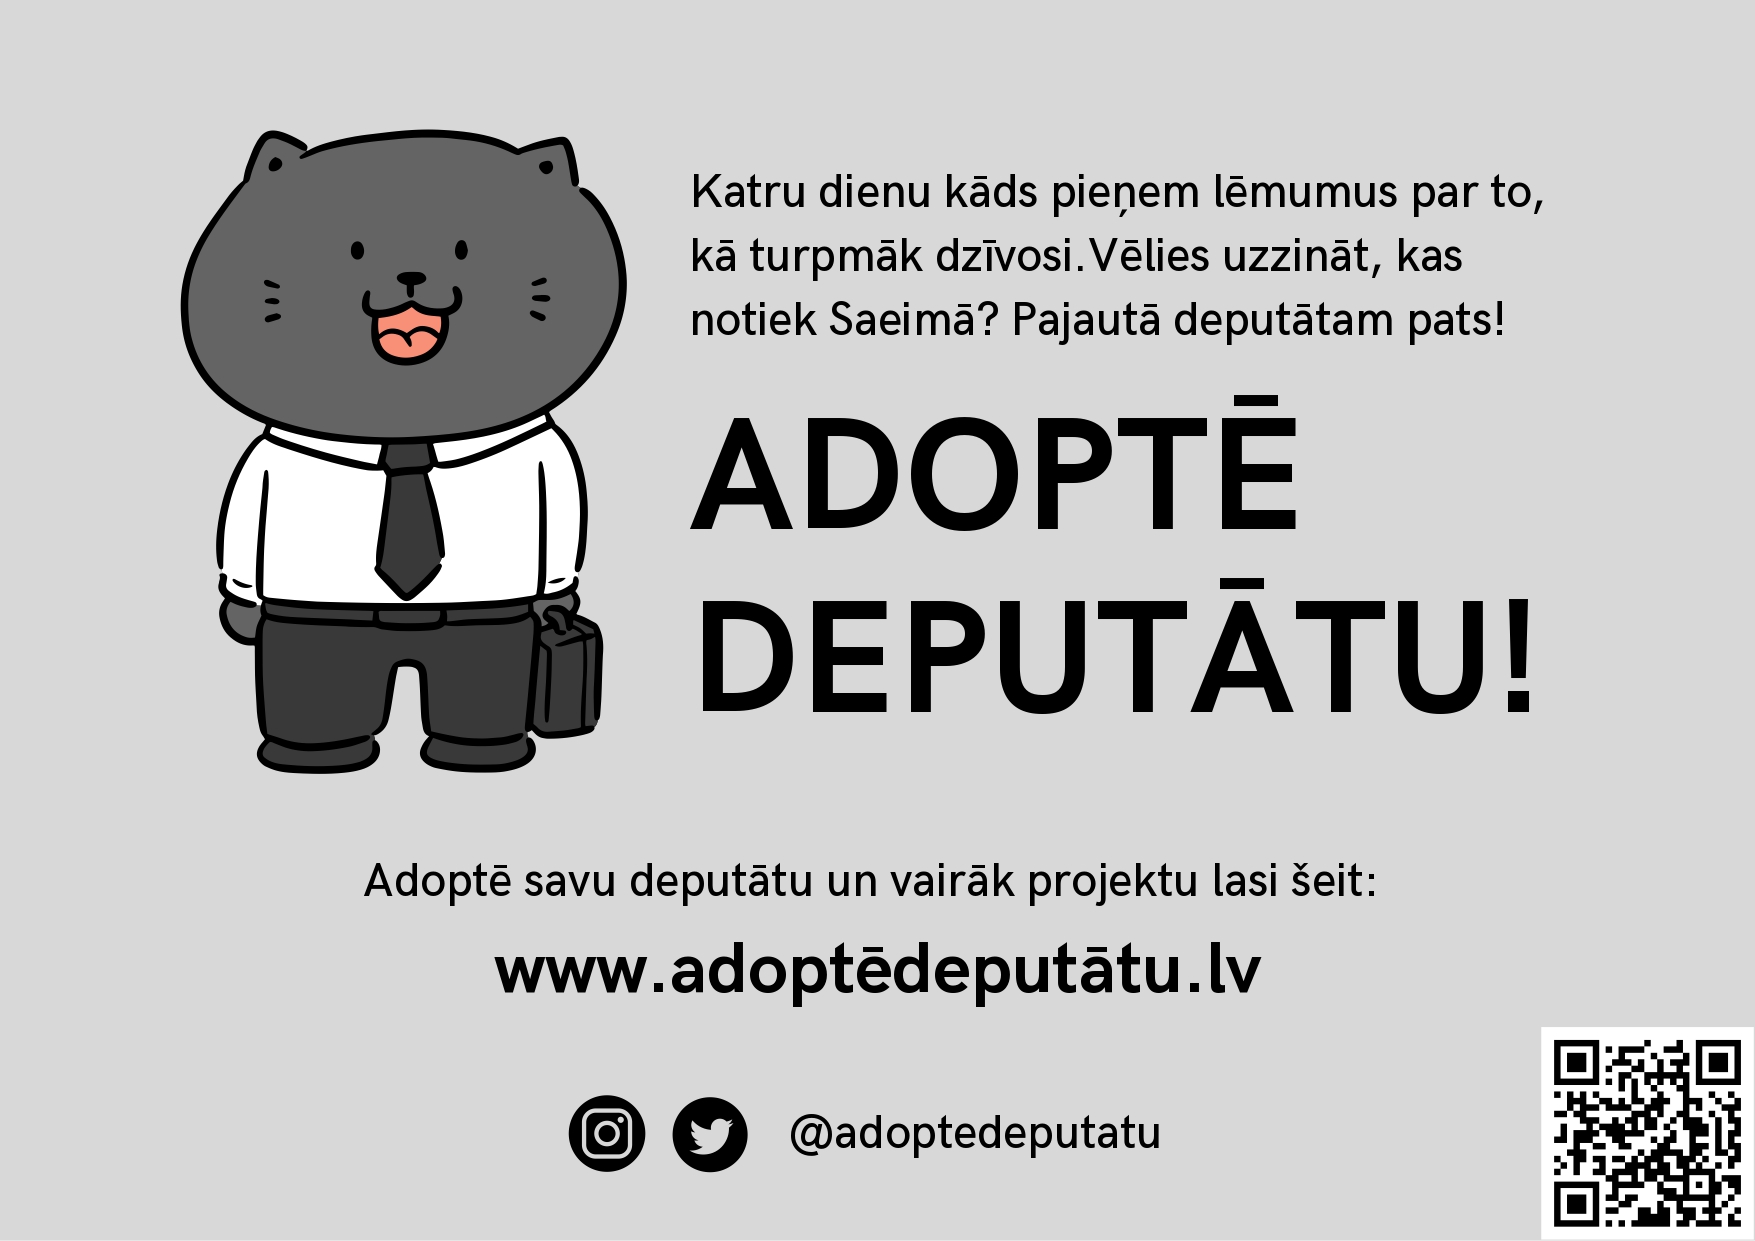 You are currently viewing adoptedeputatu.lv